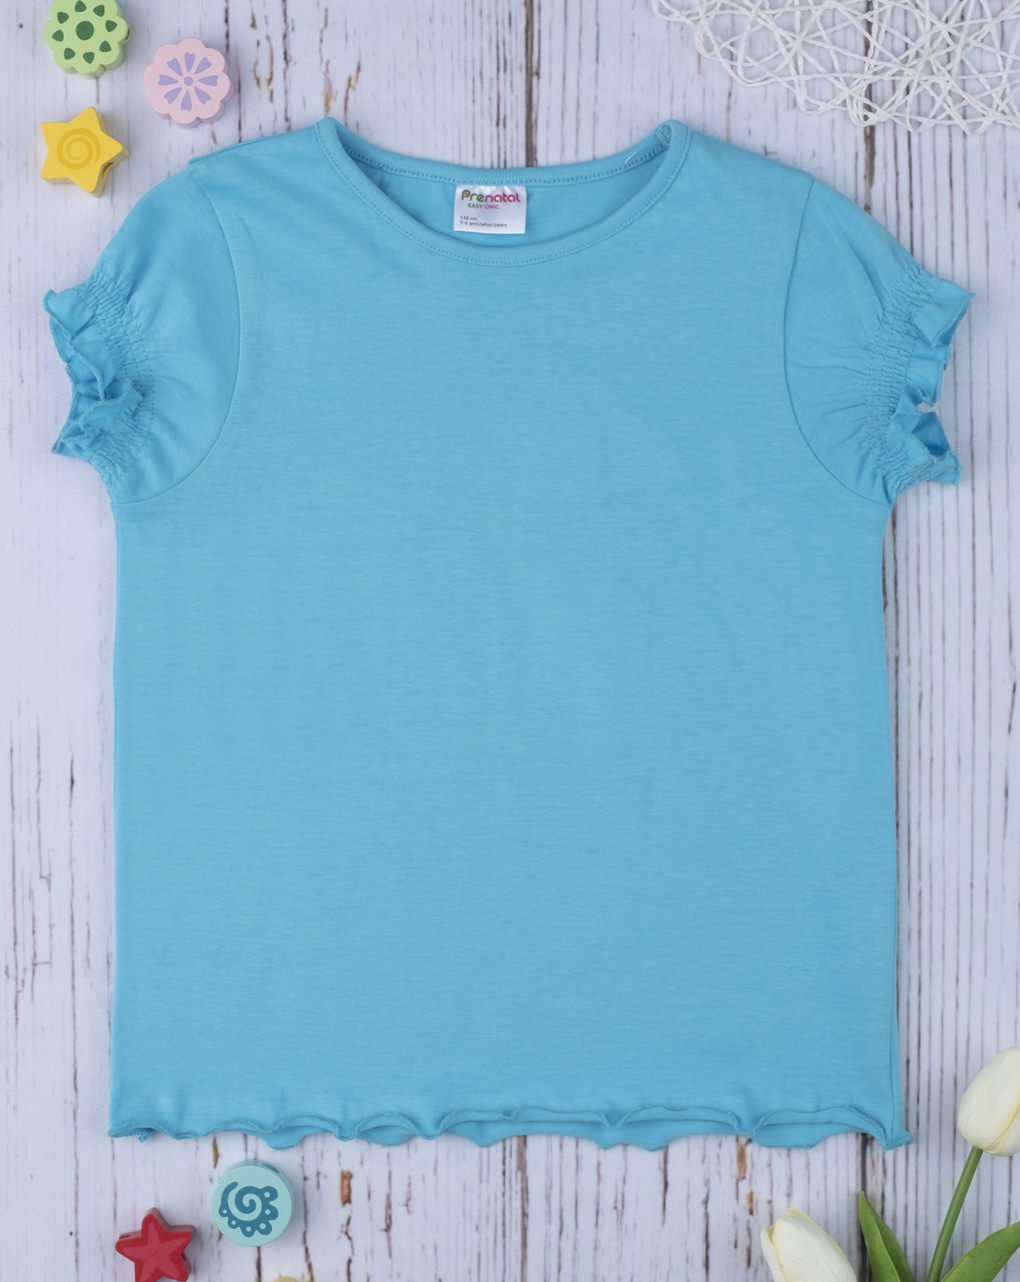 T-shirt rapariga total azzurro - Prénatal